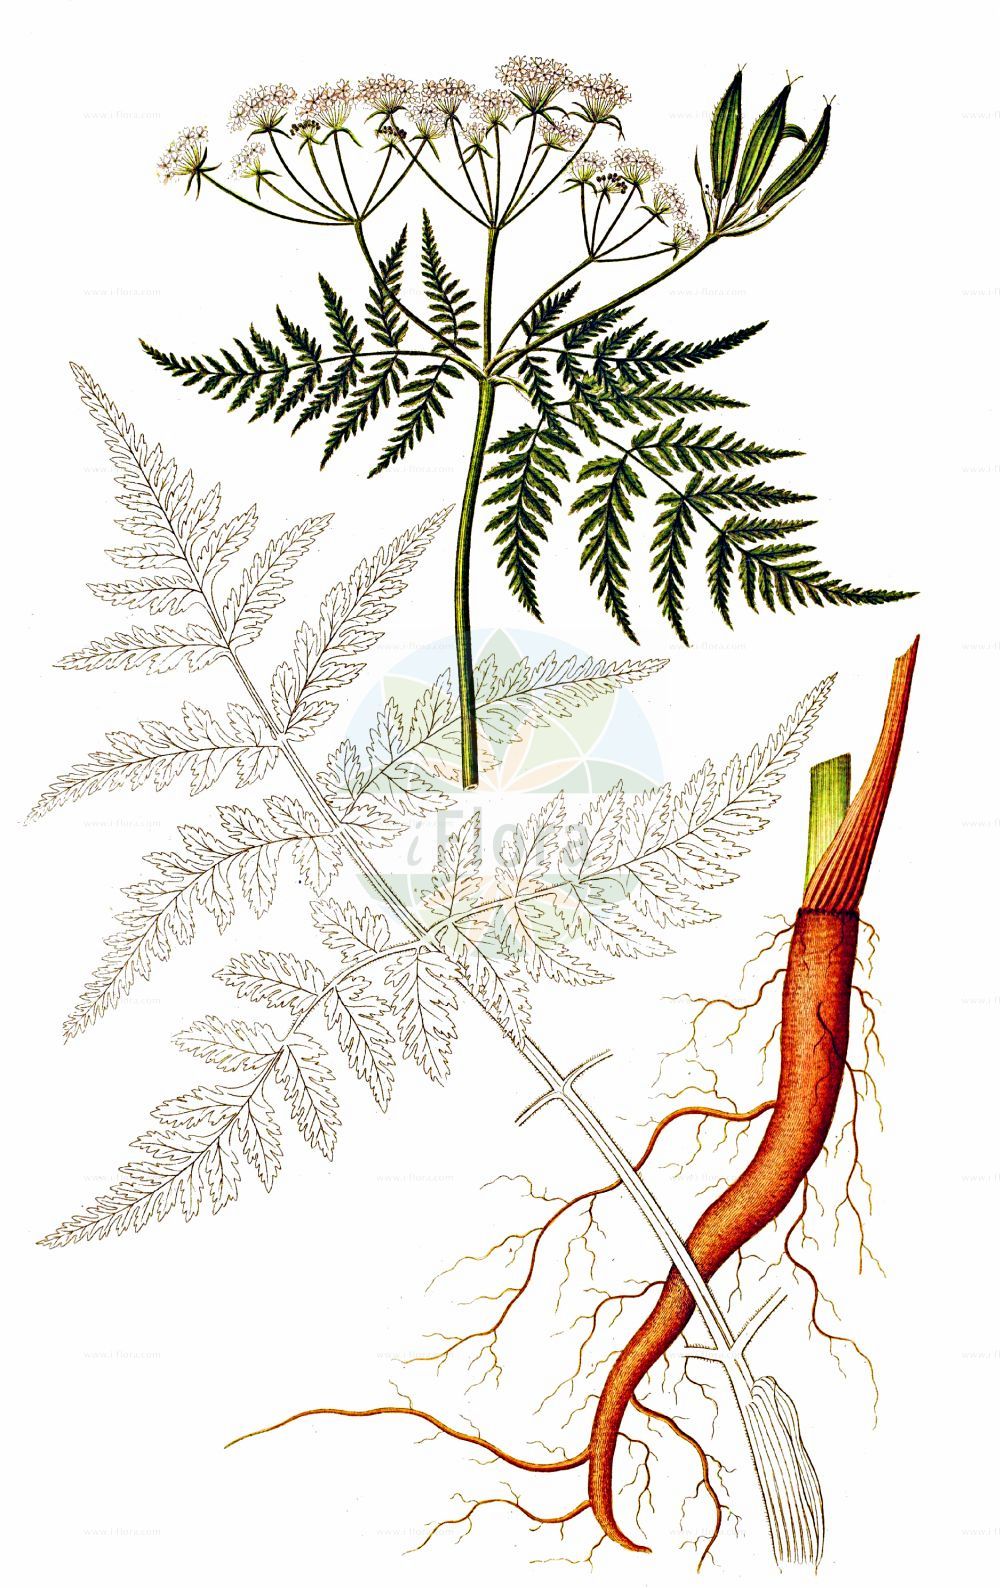 Historische Abbildung von Myrrhis odorata (Süßdolde - Sweet Cicely). Das Bild zeigt Blatt, Bluete, Frucht und Same. ---- Historical Drawing of Myrrhis odorata (Süßdolde - Sweet Cicely). The image is showing leaf, flower, fruit and seed.(Myrrhis odorata,Süßdolde,Sweet Cicely,Myrrhis odorata,Scandix odorata,Suessdolde,Sweet Cicely,Myrrh,Anise,Sweet Chervil,Myrrhis,Süßdolde,Cicely,Apiaceae,Doldengewächse,Carrot family,Blatt,Bluete,Frucht,Same,leaf,flower,fruit,seed,Oeder (1761-1883))